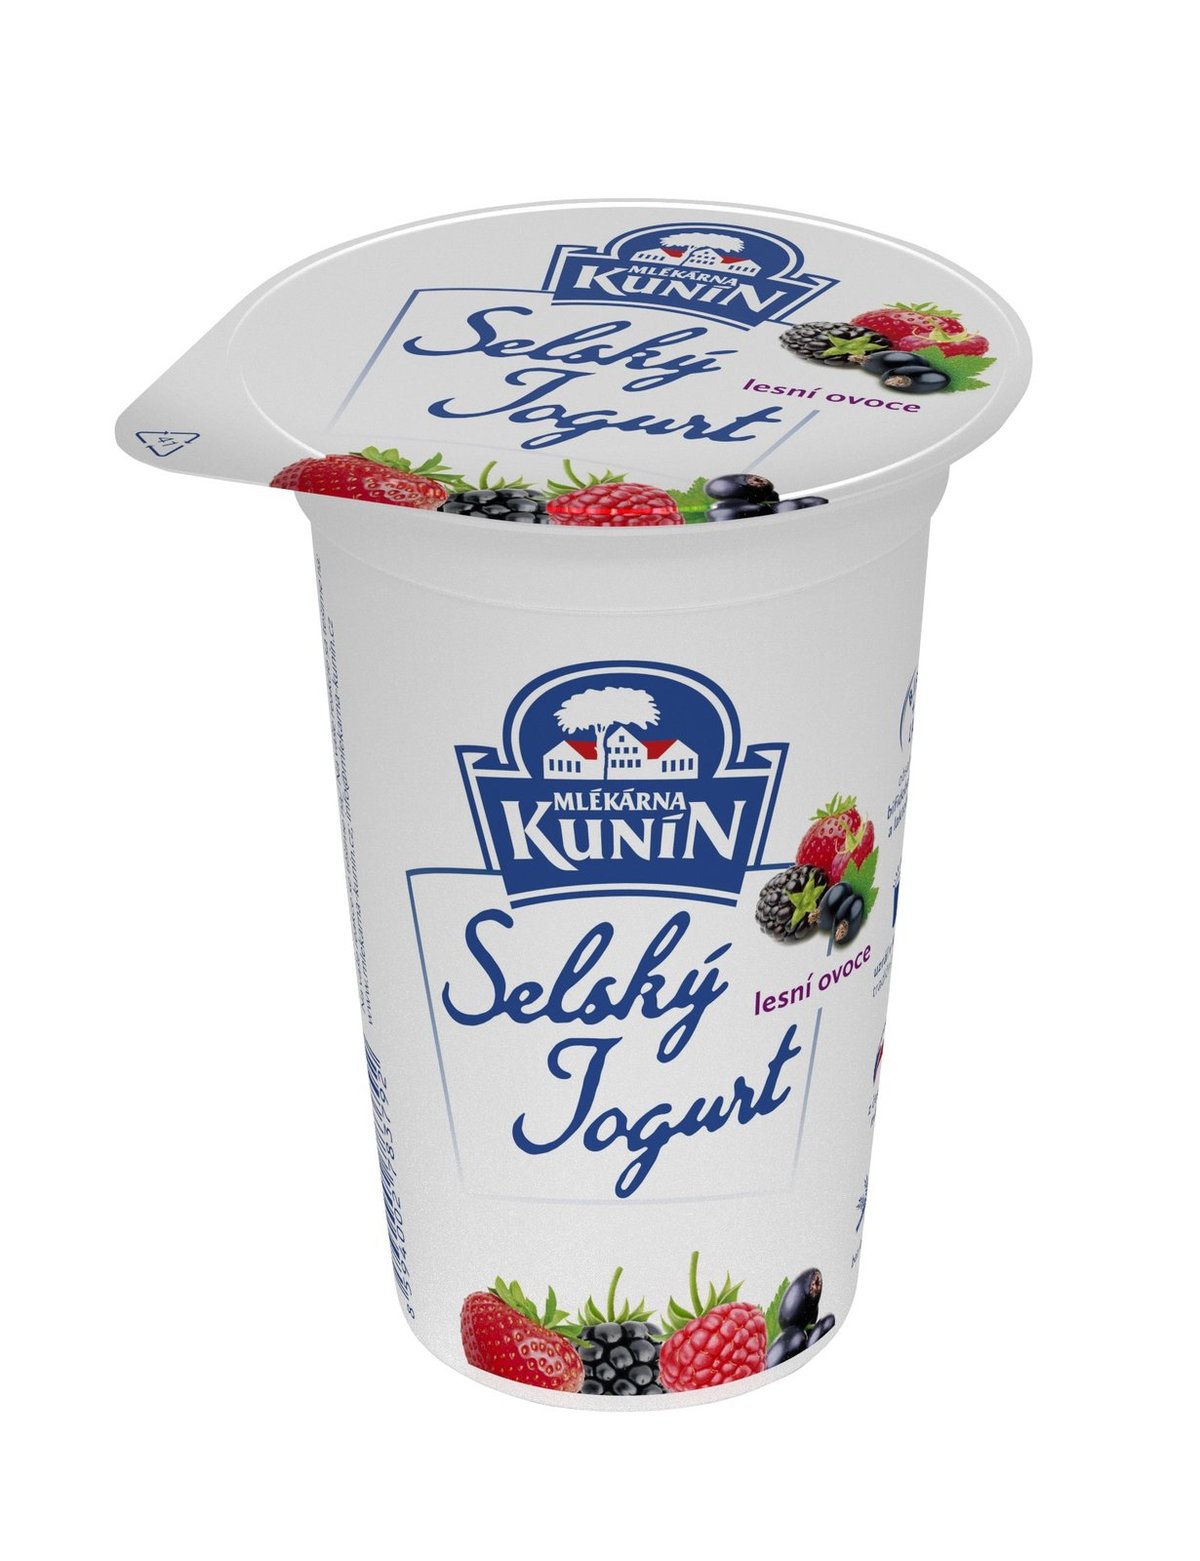 Selský jogurt Kunín s lesním ovocem, 16,90 Kč